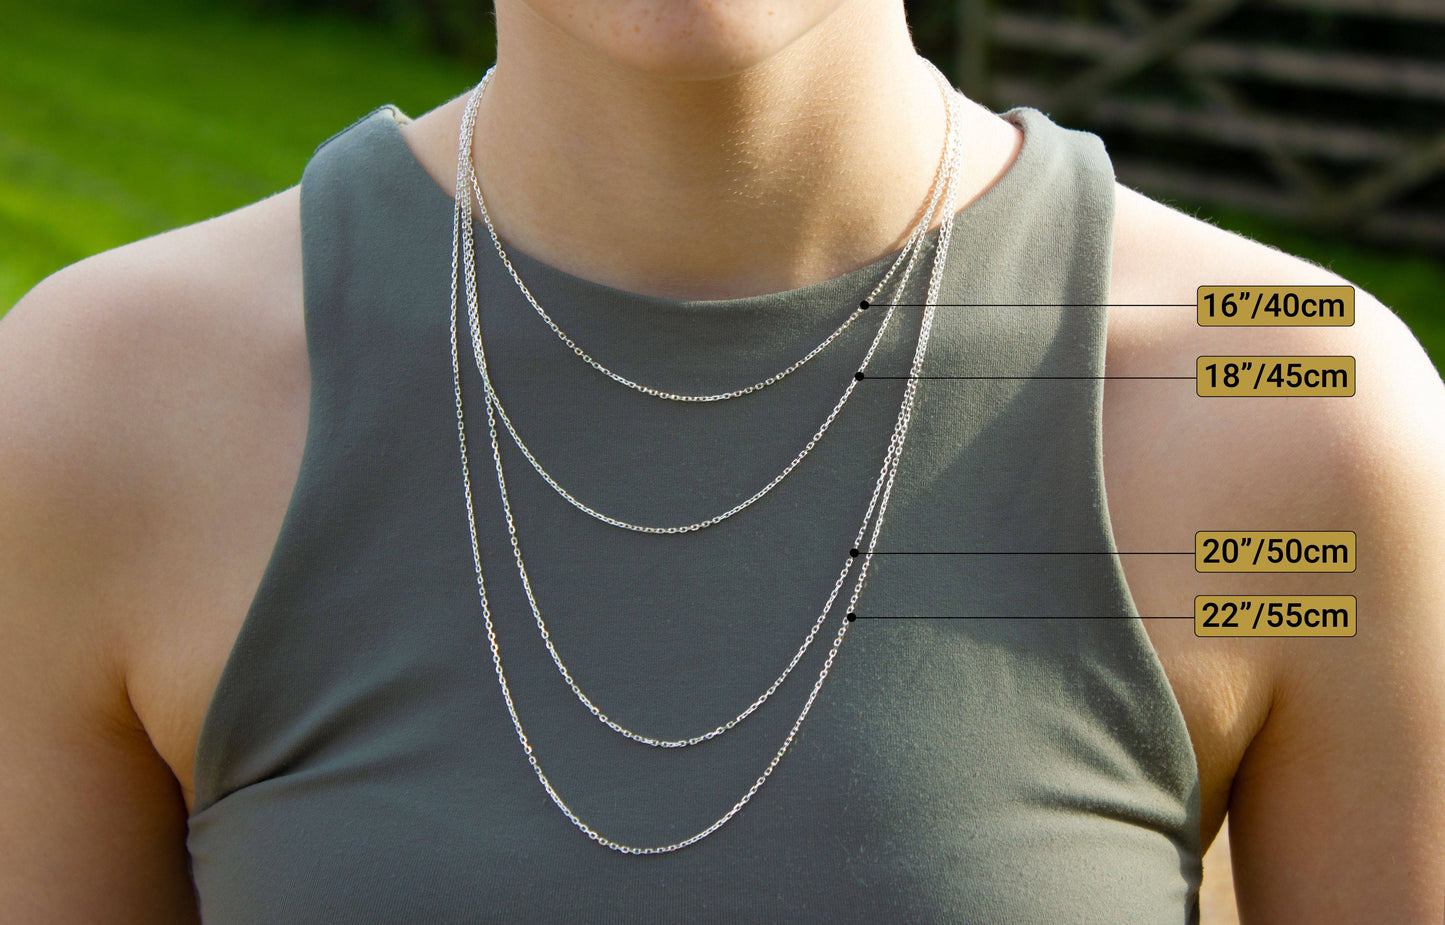 Bichon Silver Necklace - MYLEE London